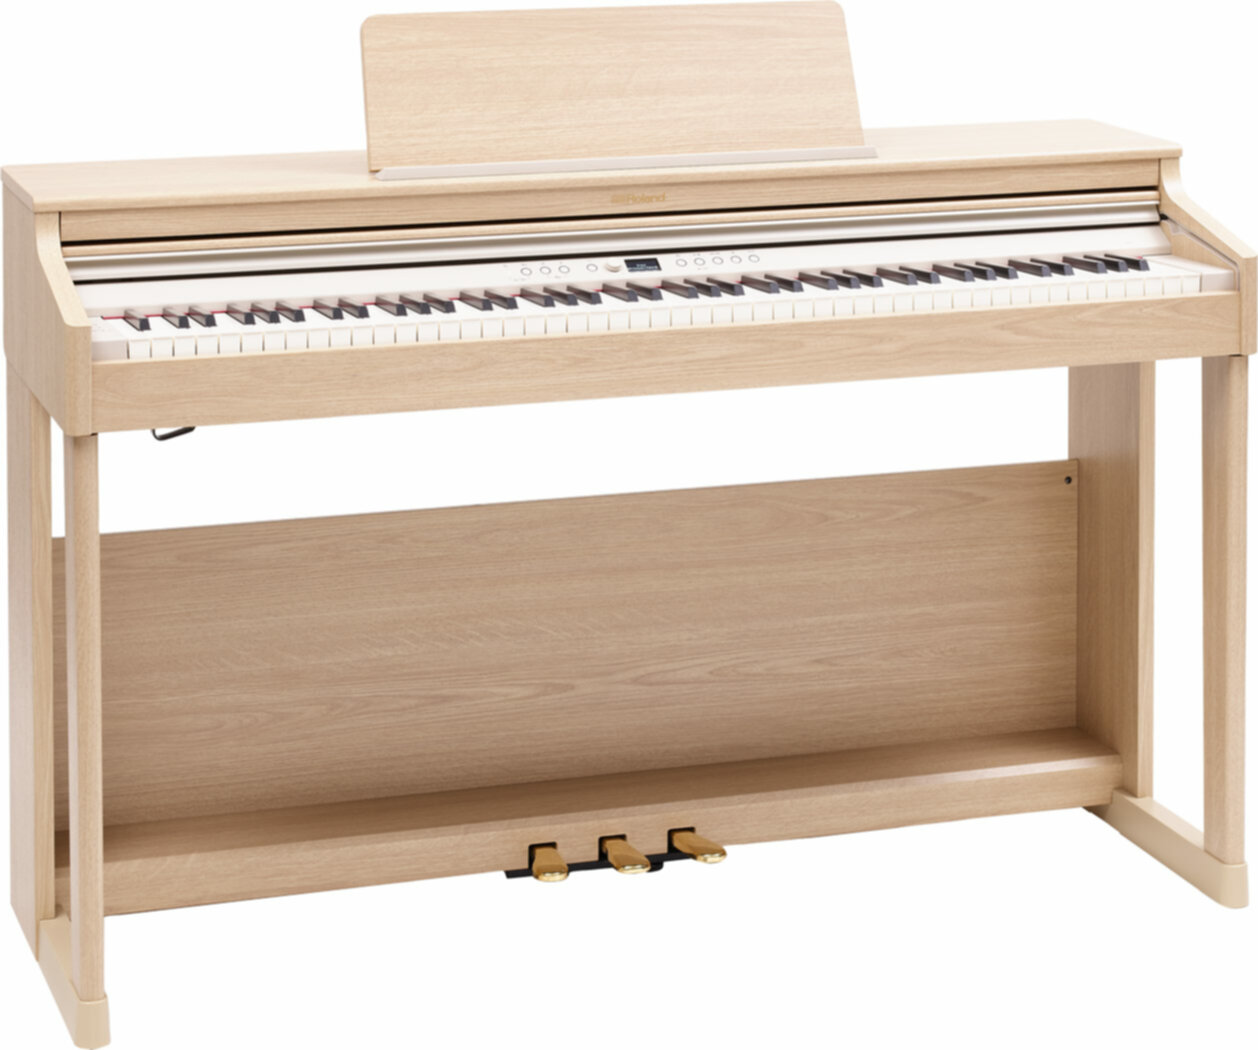 ROLAND RP701-LA Piano numérique - 1459,00€ - La musique au meilleur prix !  A Bordeaux Mérignac et Libourne.